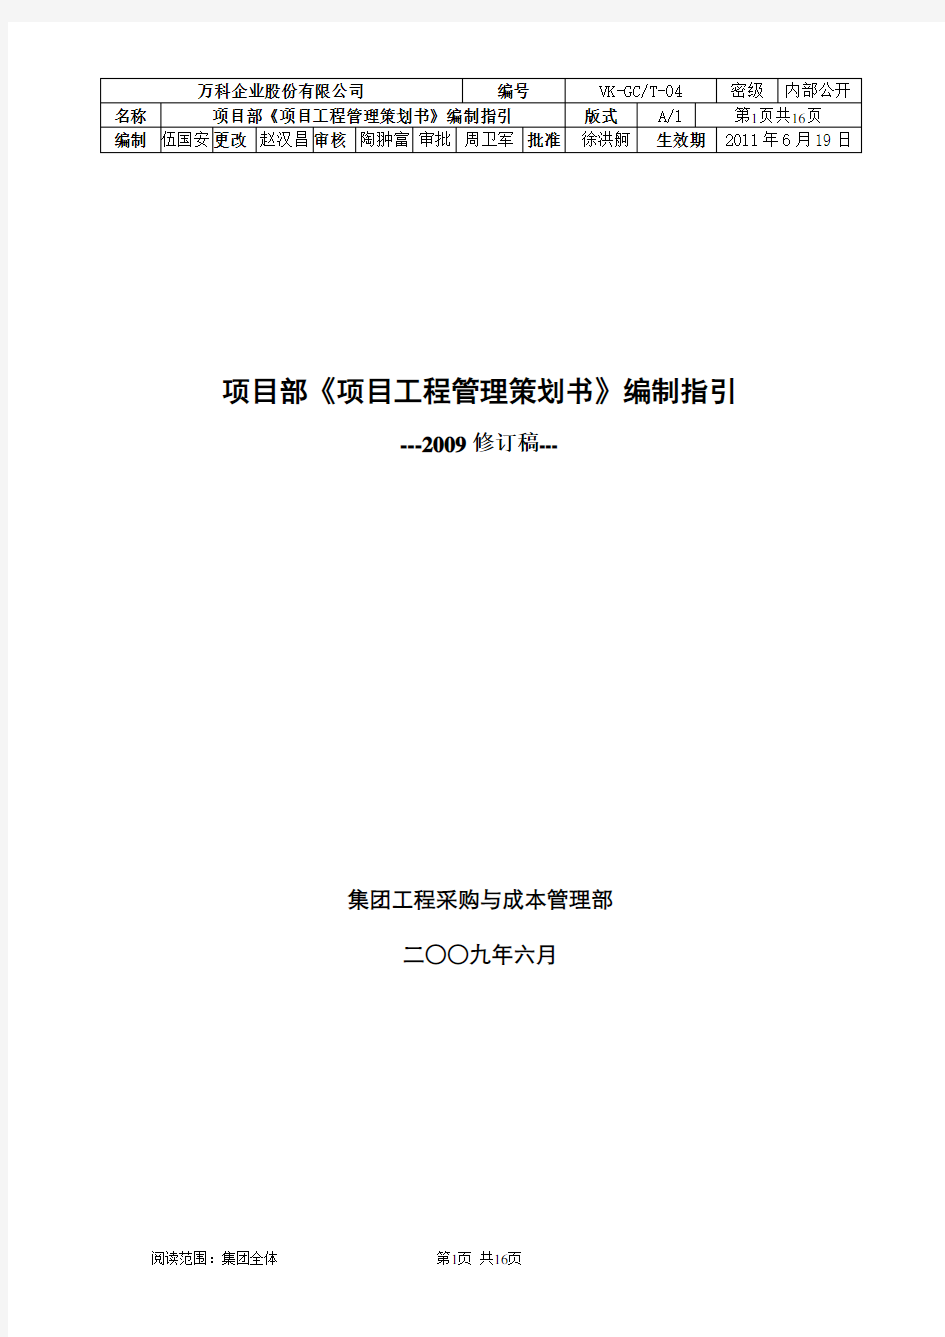 万科集团项目《项目工程管理策划书》编制指引(2011修订稿)